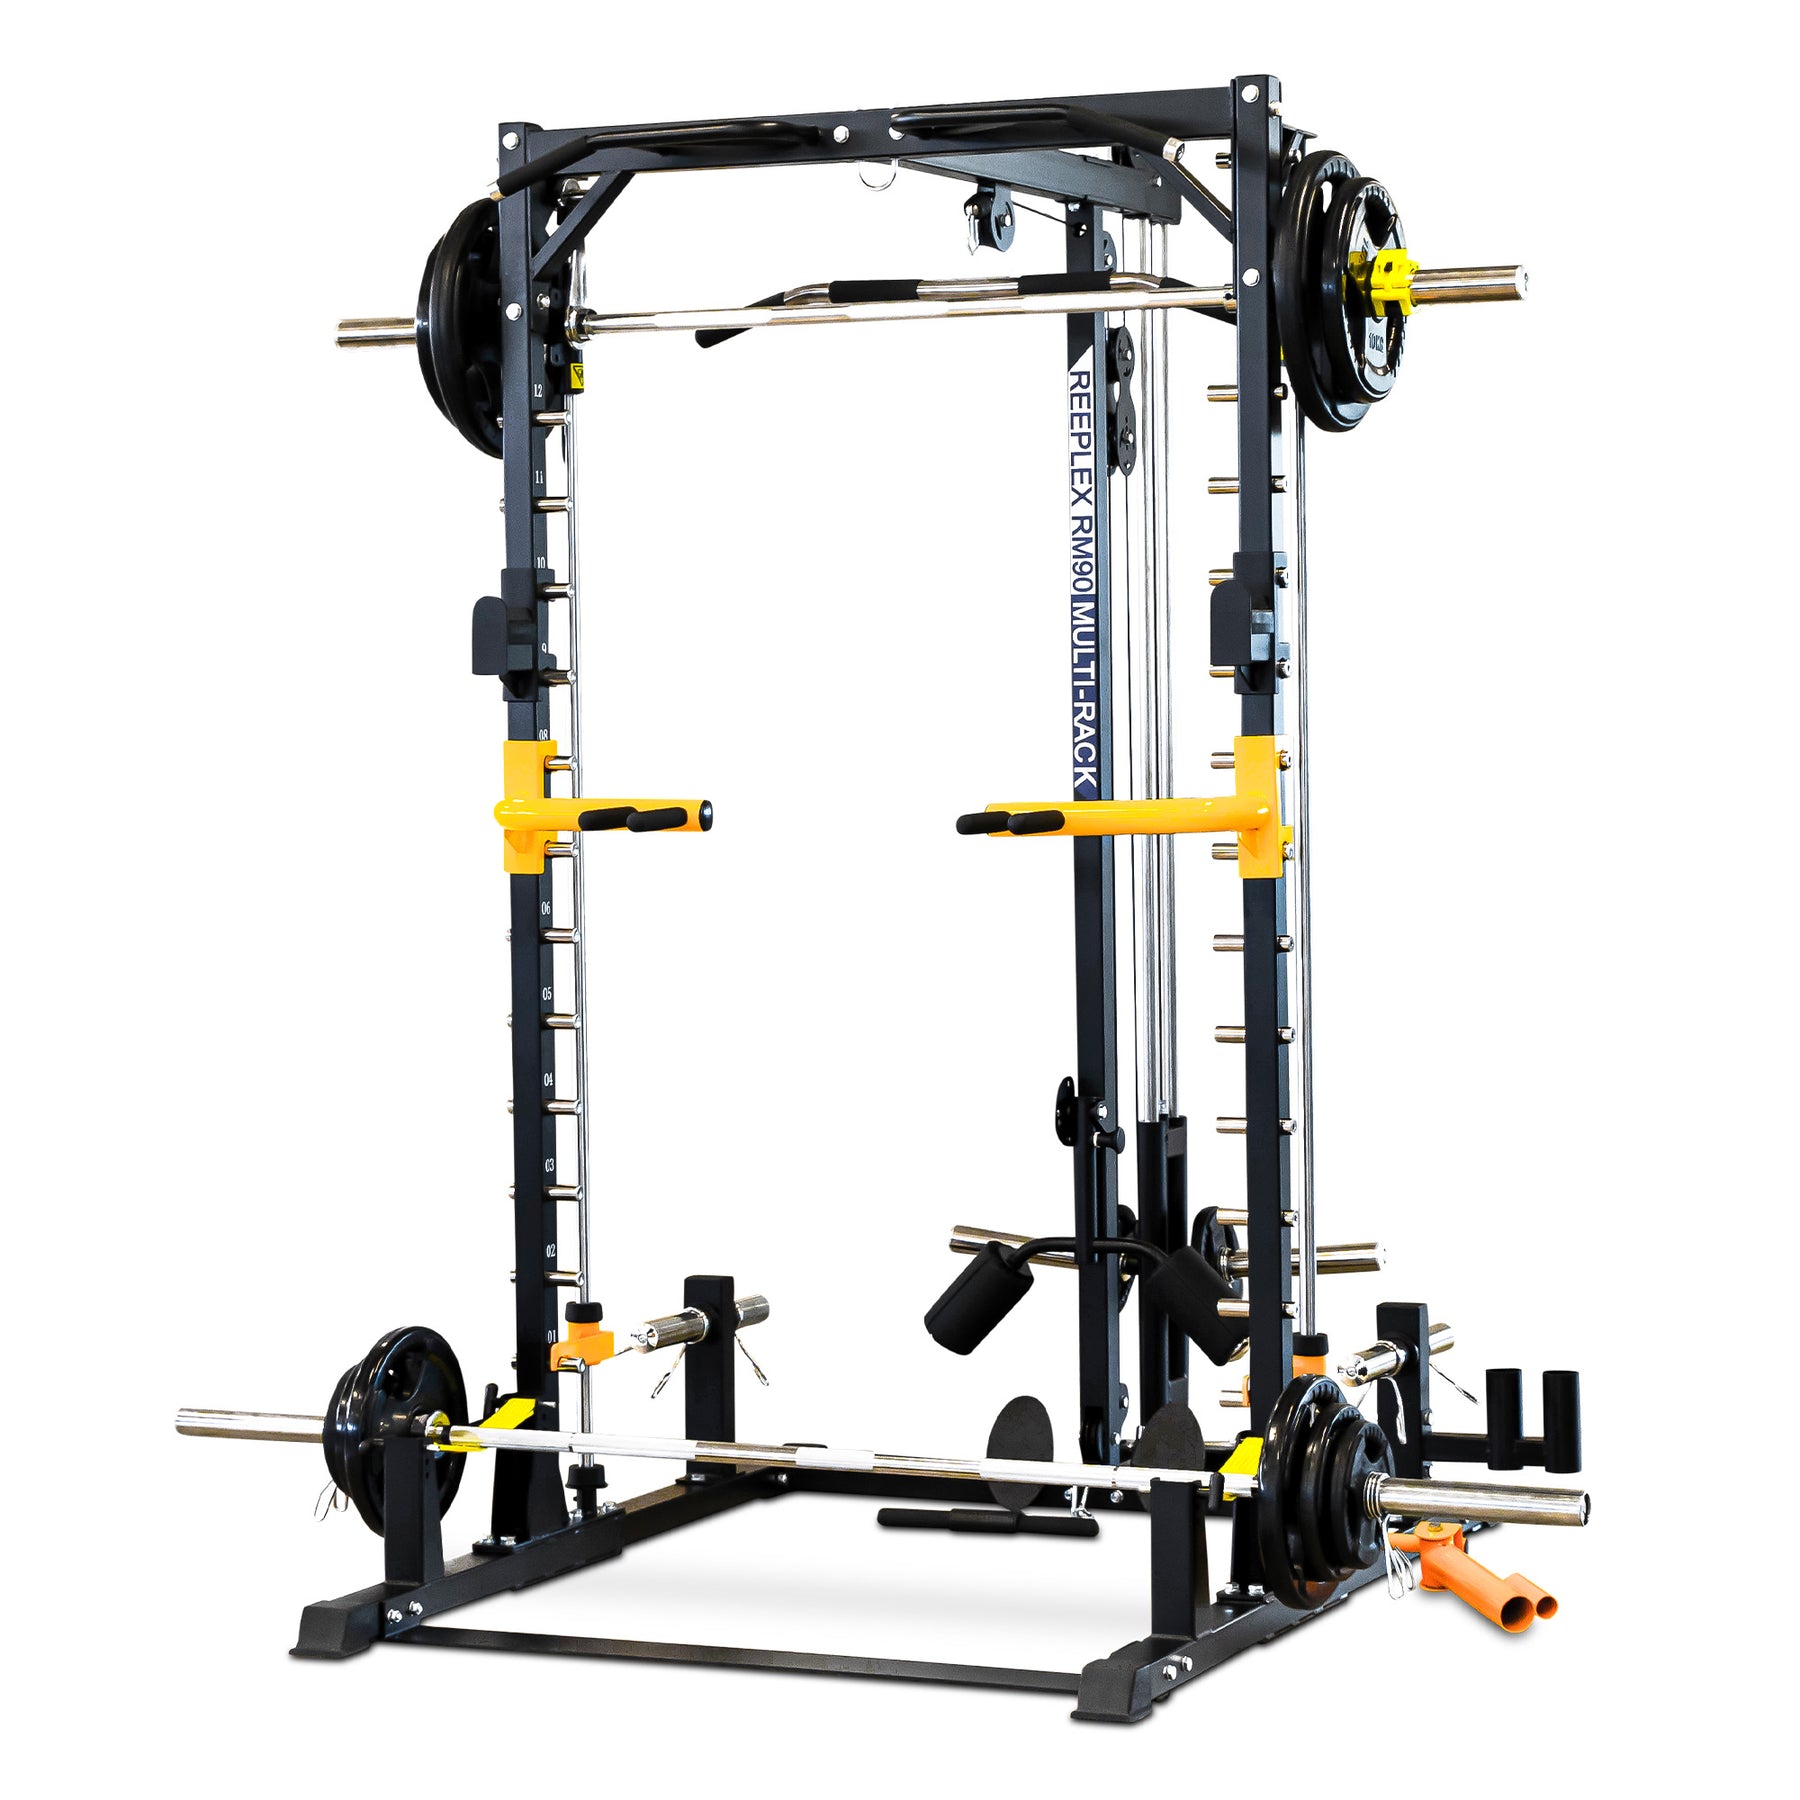 reeplex rm90 squat rack with smith machine - quality smith